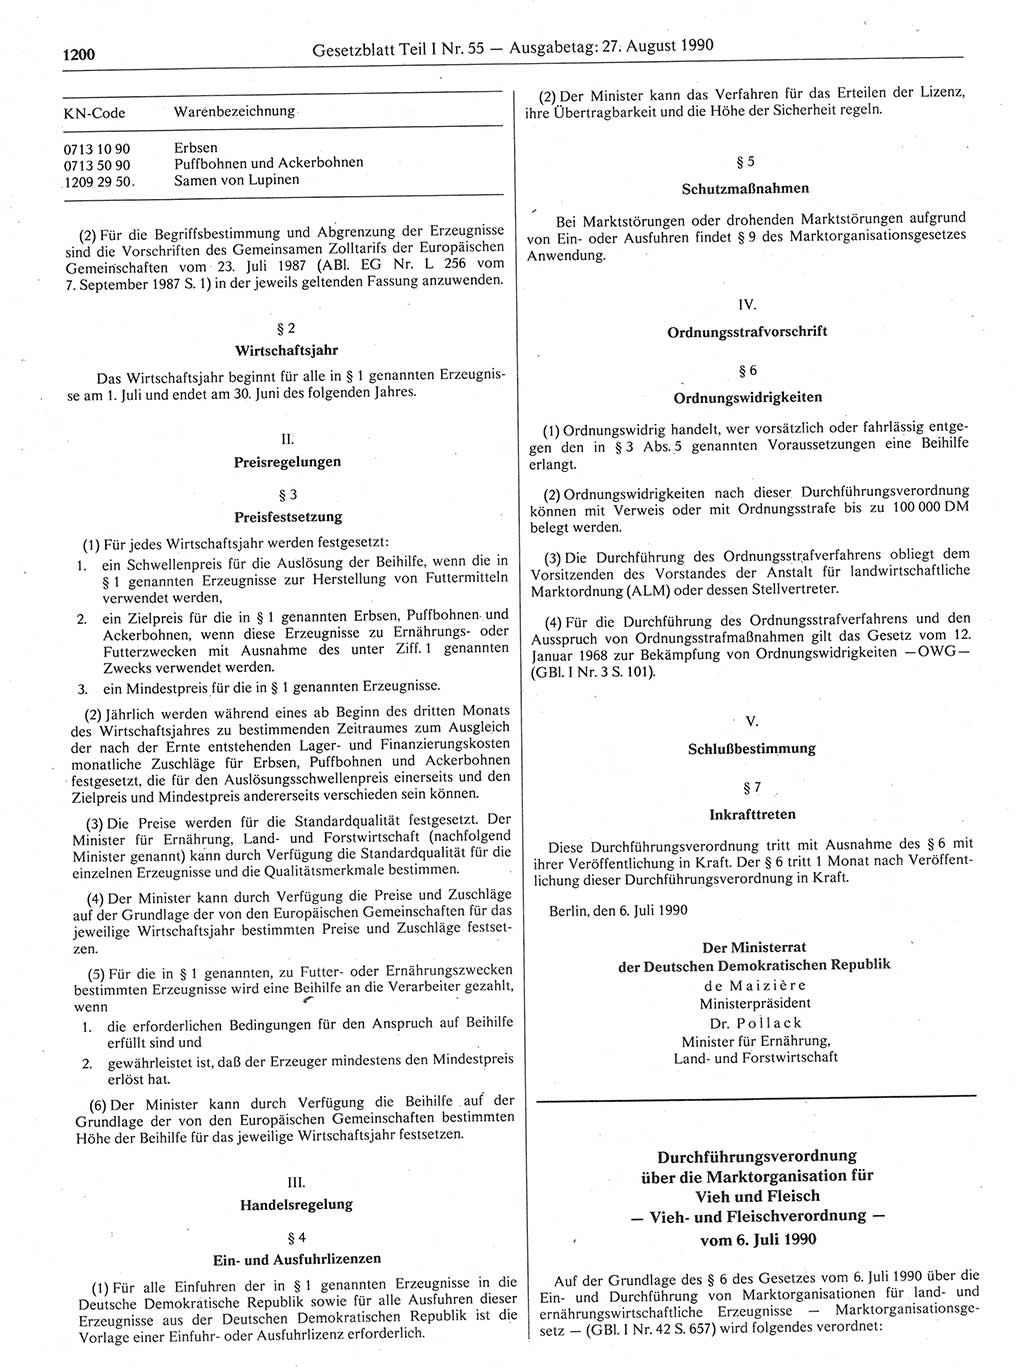 Gesetzblatt (GBl.) der Deutschen Demokratischen Republik (DDR) Teil Ⅰ 1990, Seite 1200 (GBl. DDR Ⅰ 1990, S. 1200)